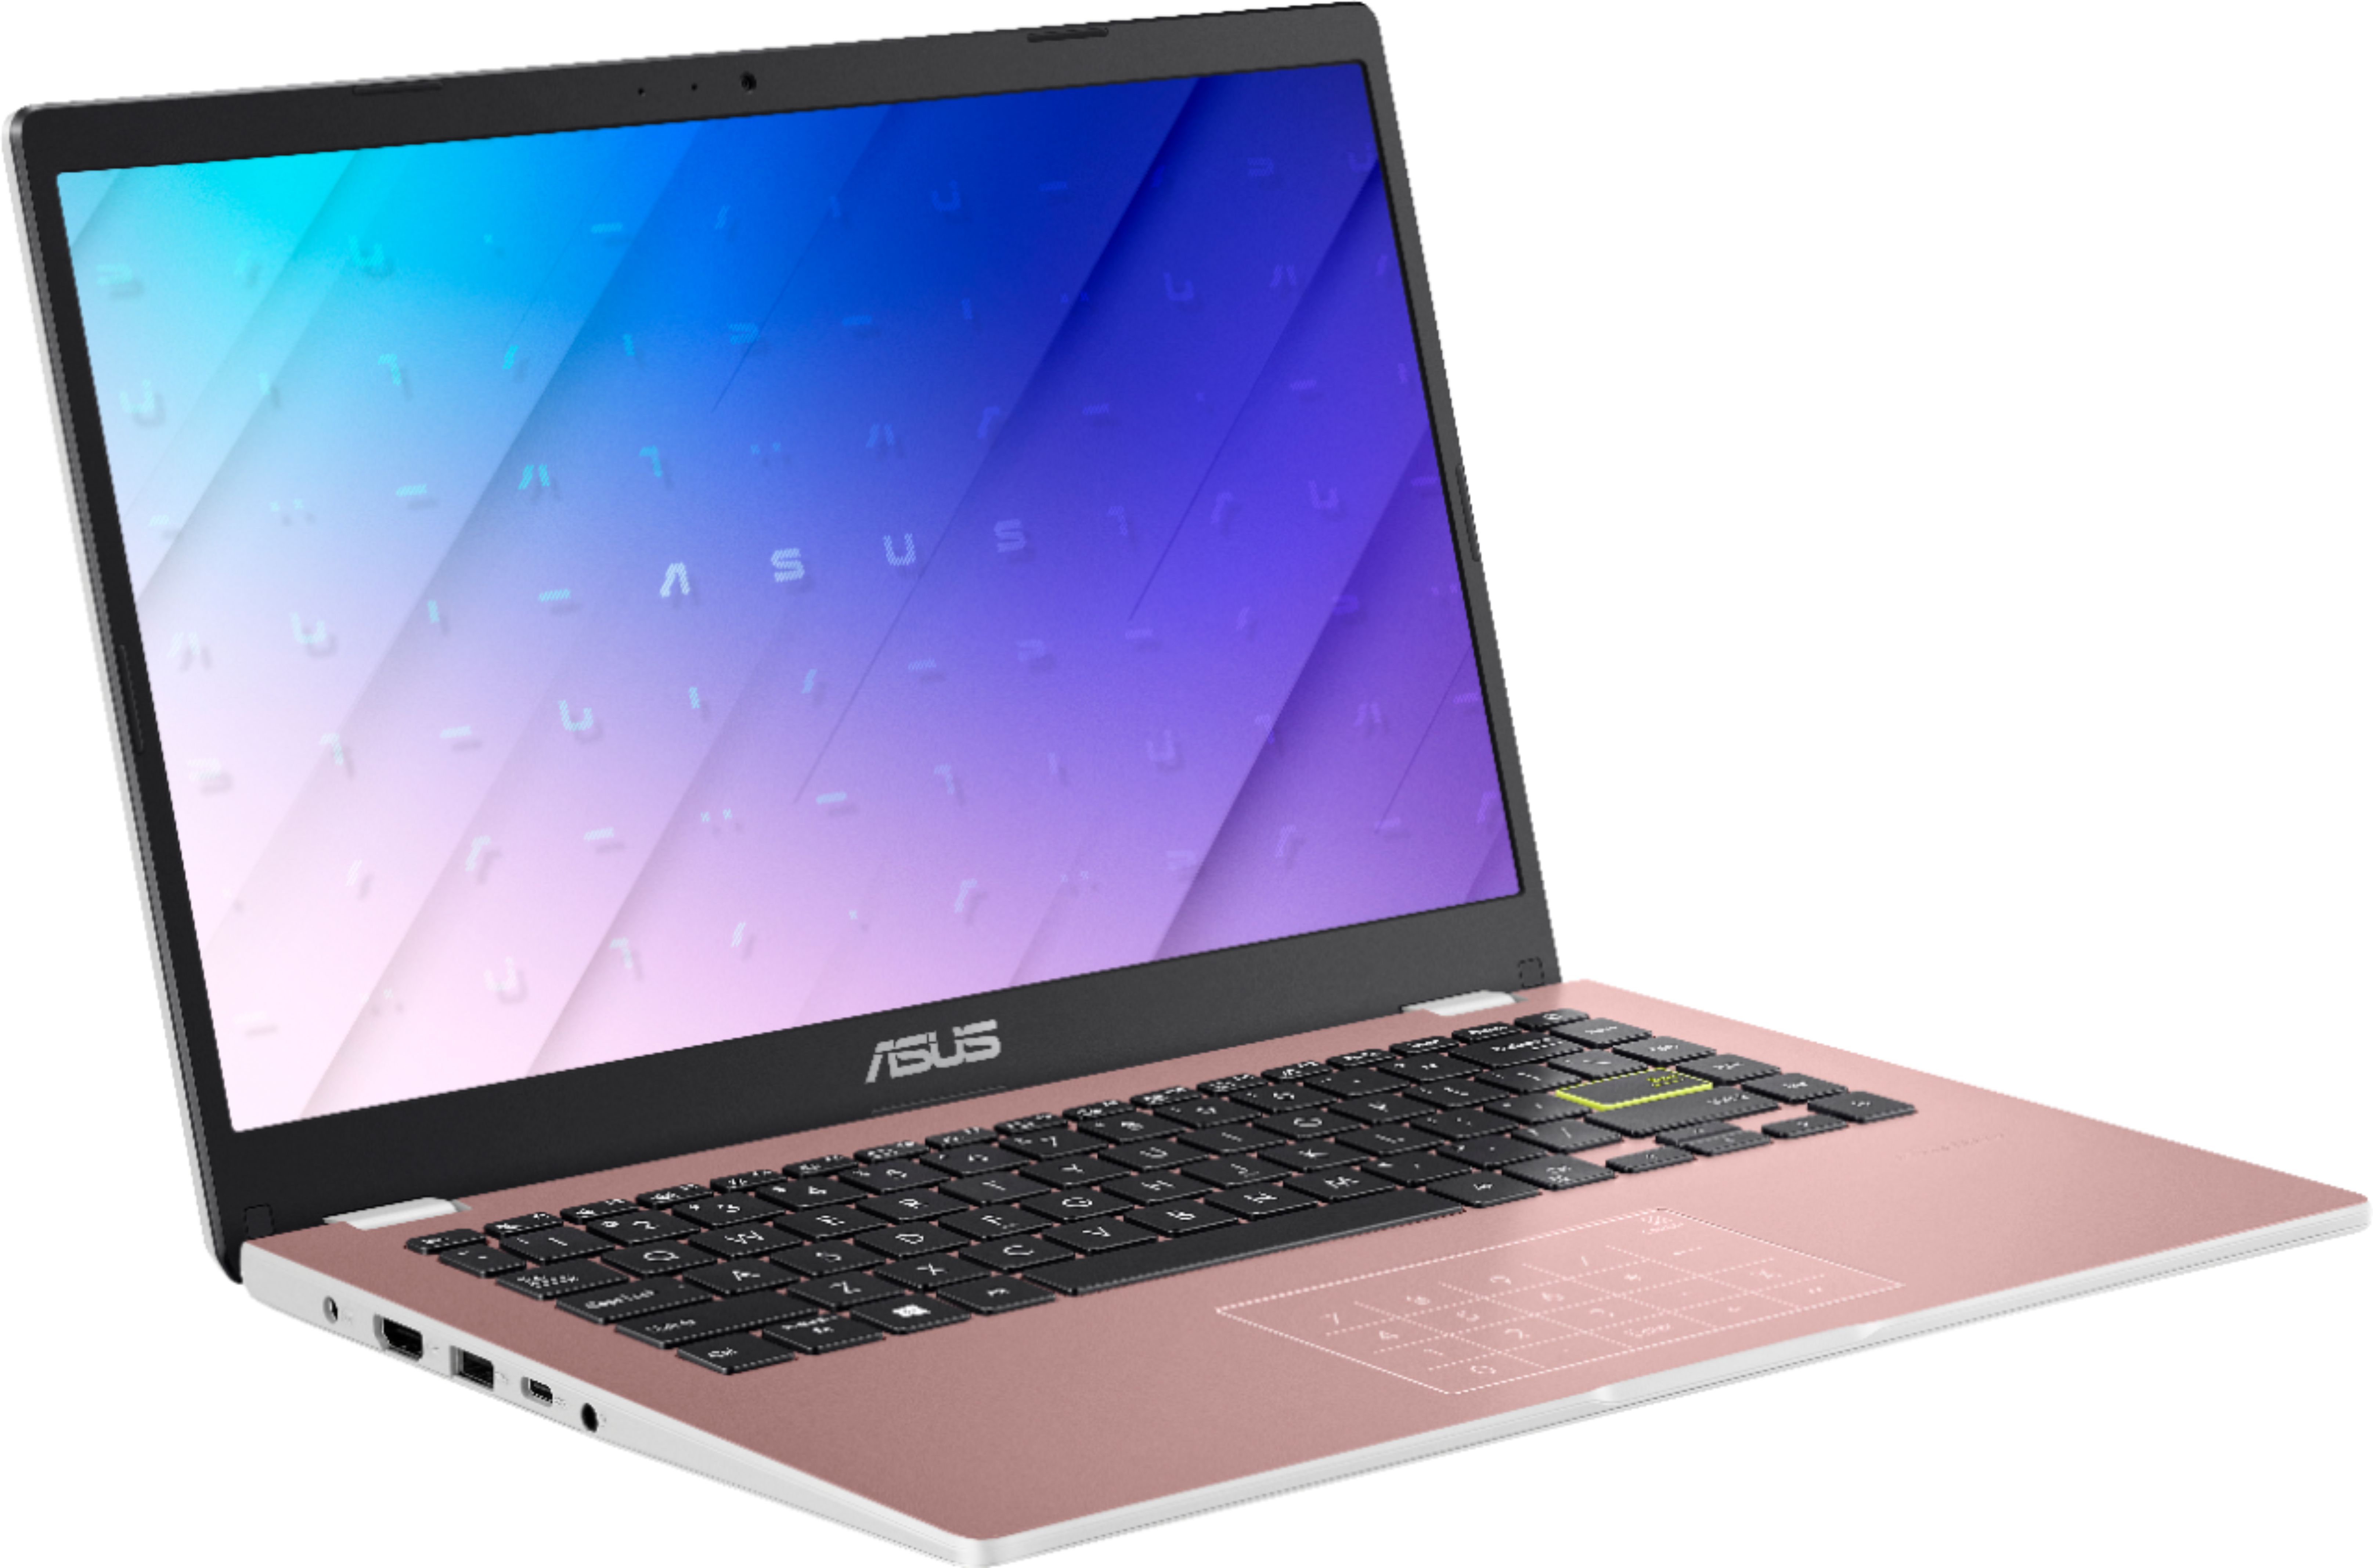 Angle View: ASUS - 14.0" Laptop - Intel Celeron N4020 - 4GB Memory - 64GB eMMC - Rose Gold - Rose Gold